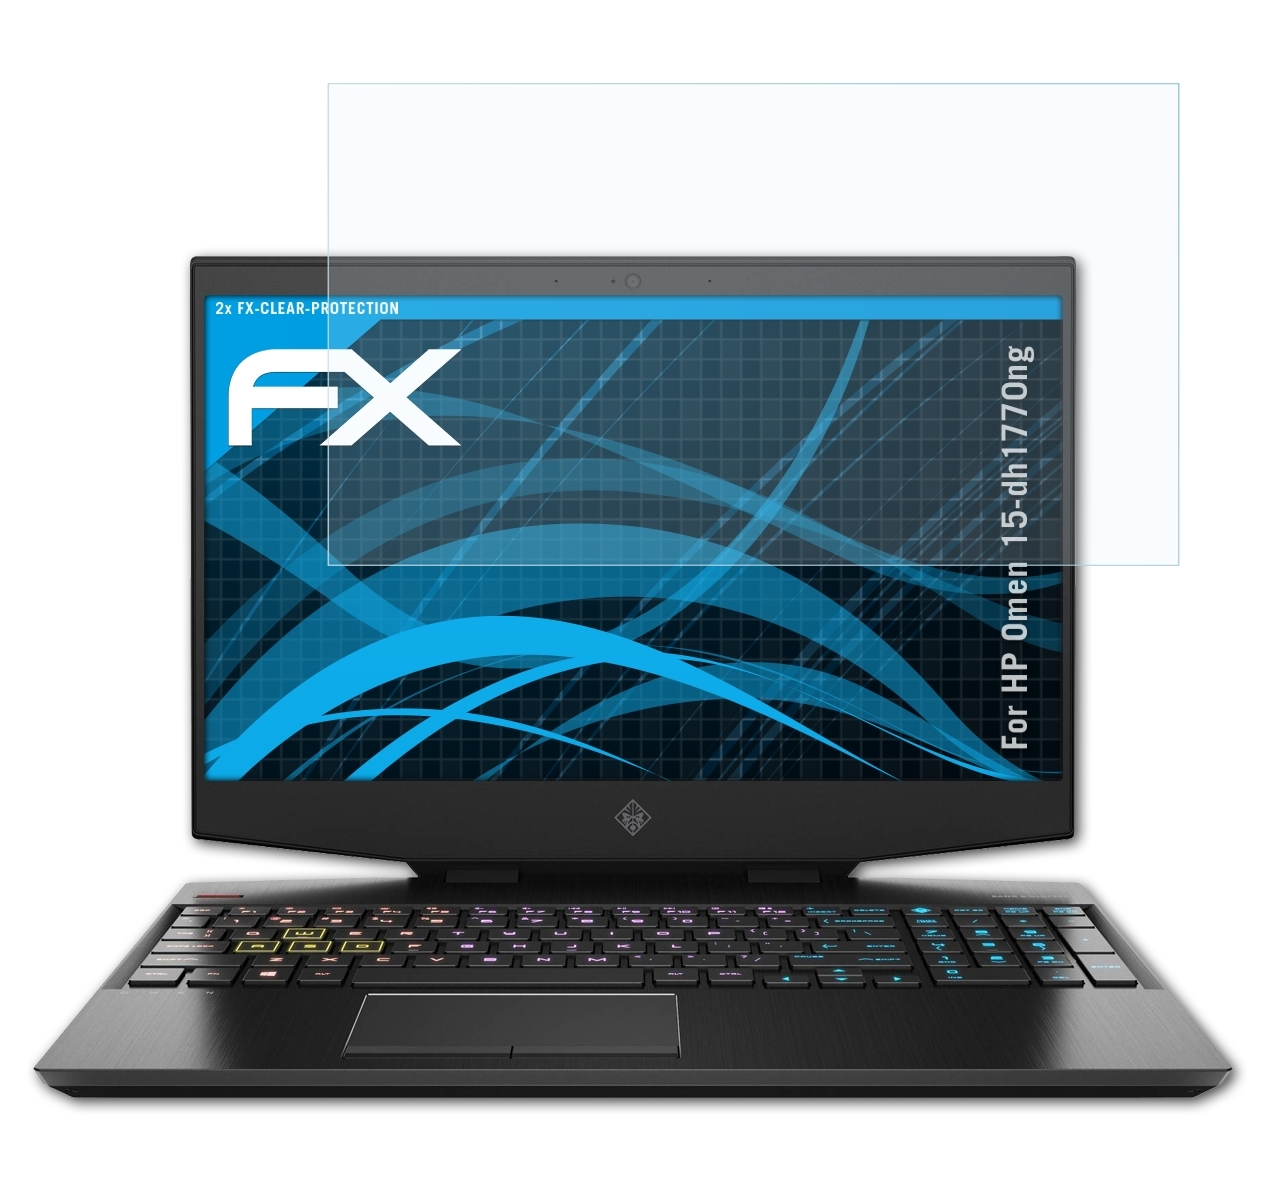 HP ATFOLIX Omen 2x FX-Clear Displayschutz(für 15-dh1770ng)